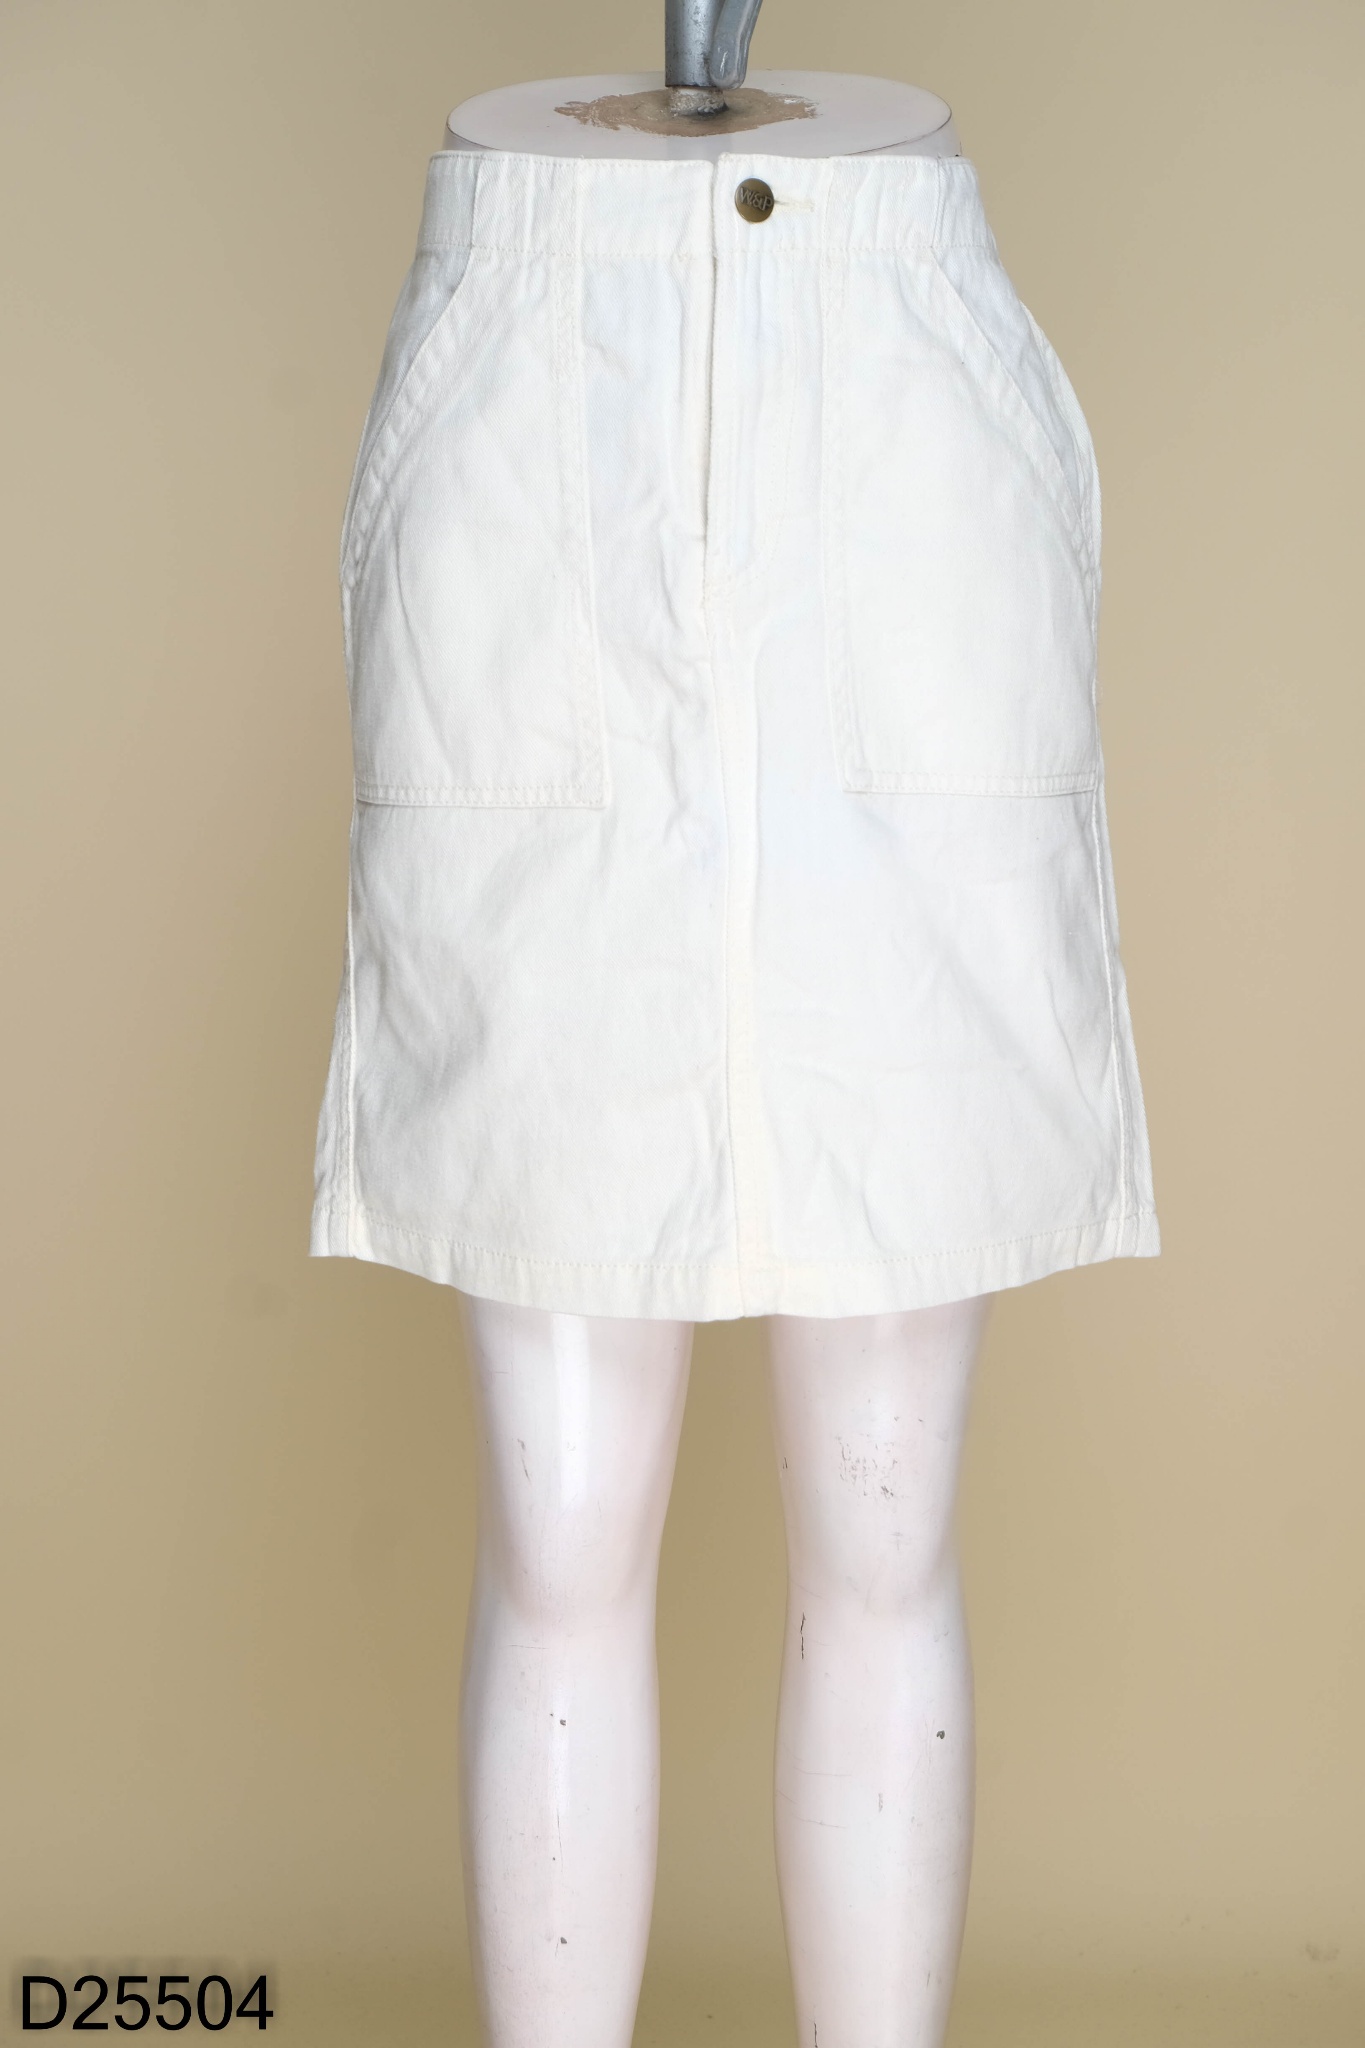 CV1925 : Chân váy Jean ngắn phối ren hoa 2 túi - yishop.com.vn